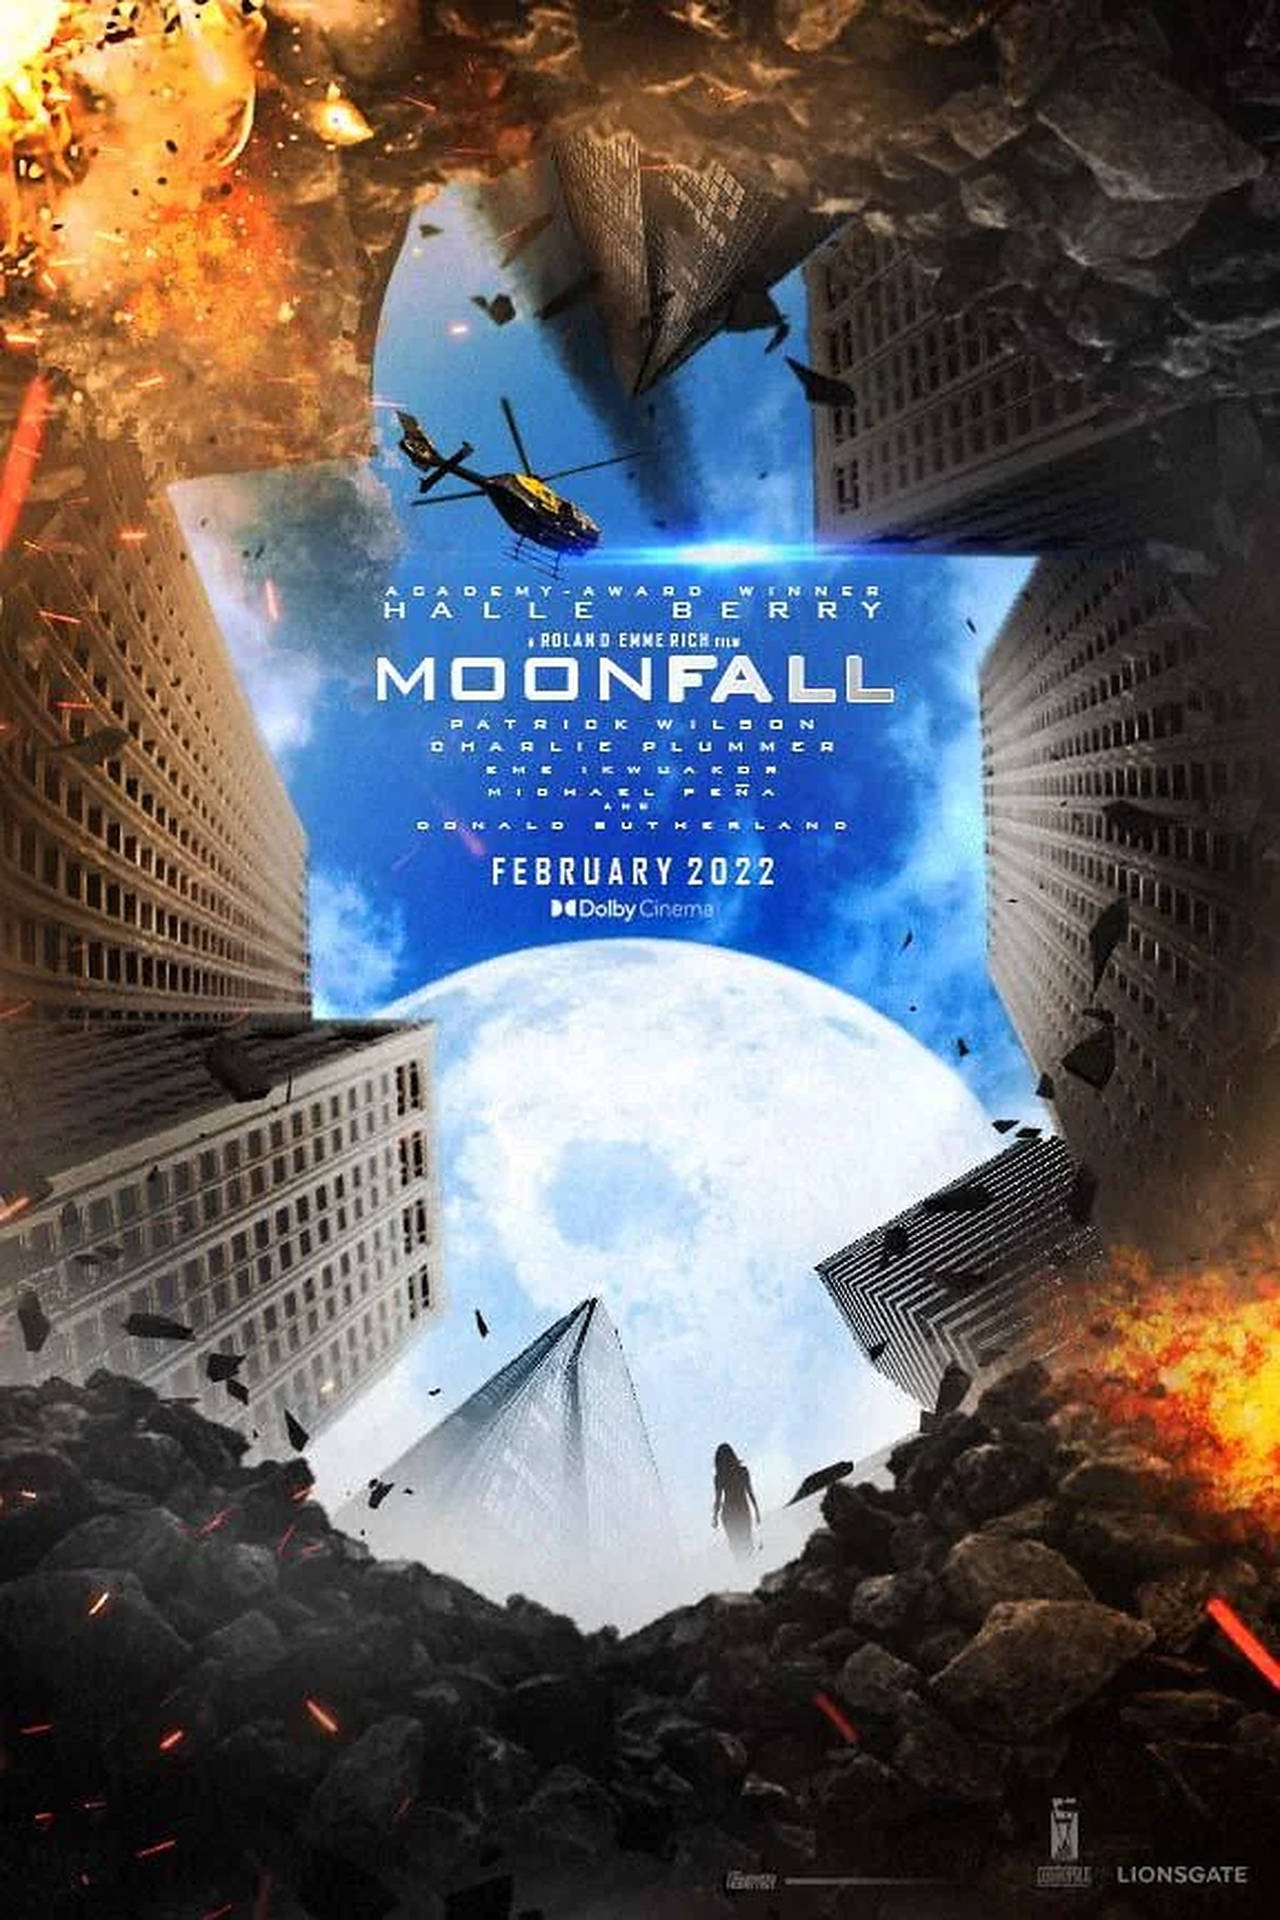 Moonfall Digital Poster Wallpaper